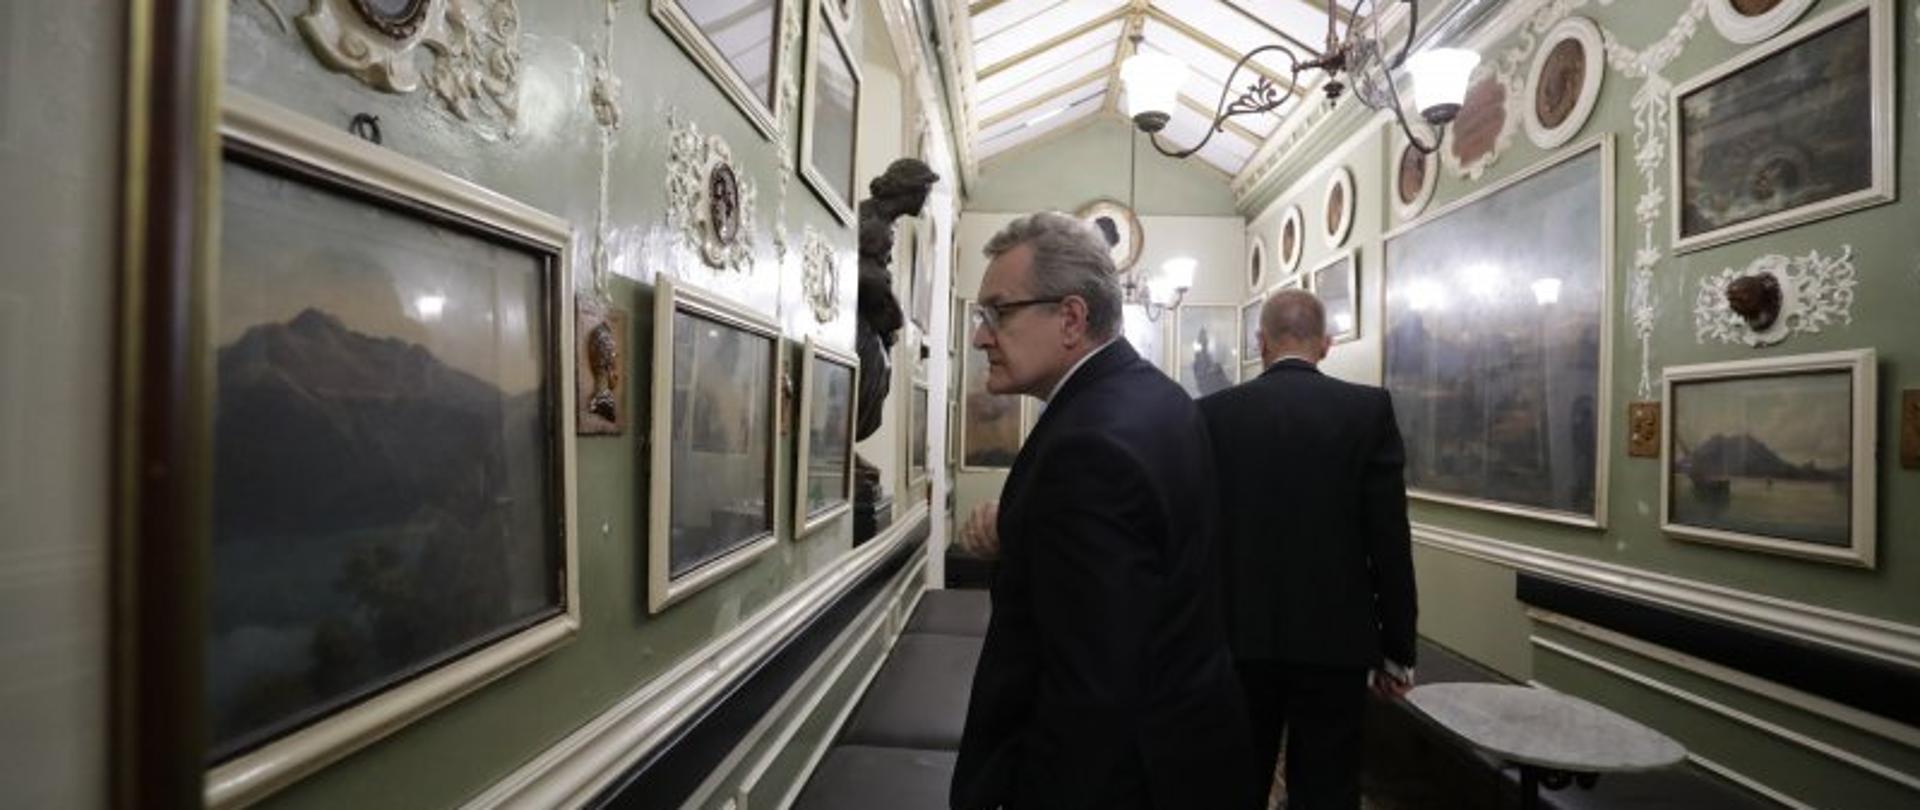 Wicepremier, minister kultury i dziedzictwa narodowego Piotr Gliński, składając wizytę w Rzymie, fot. Danuta Matloch